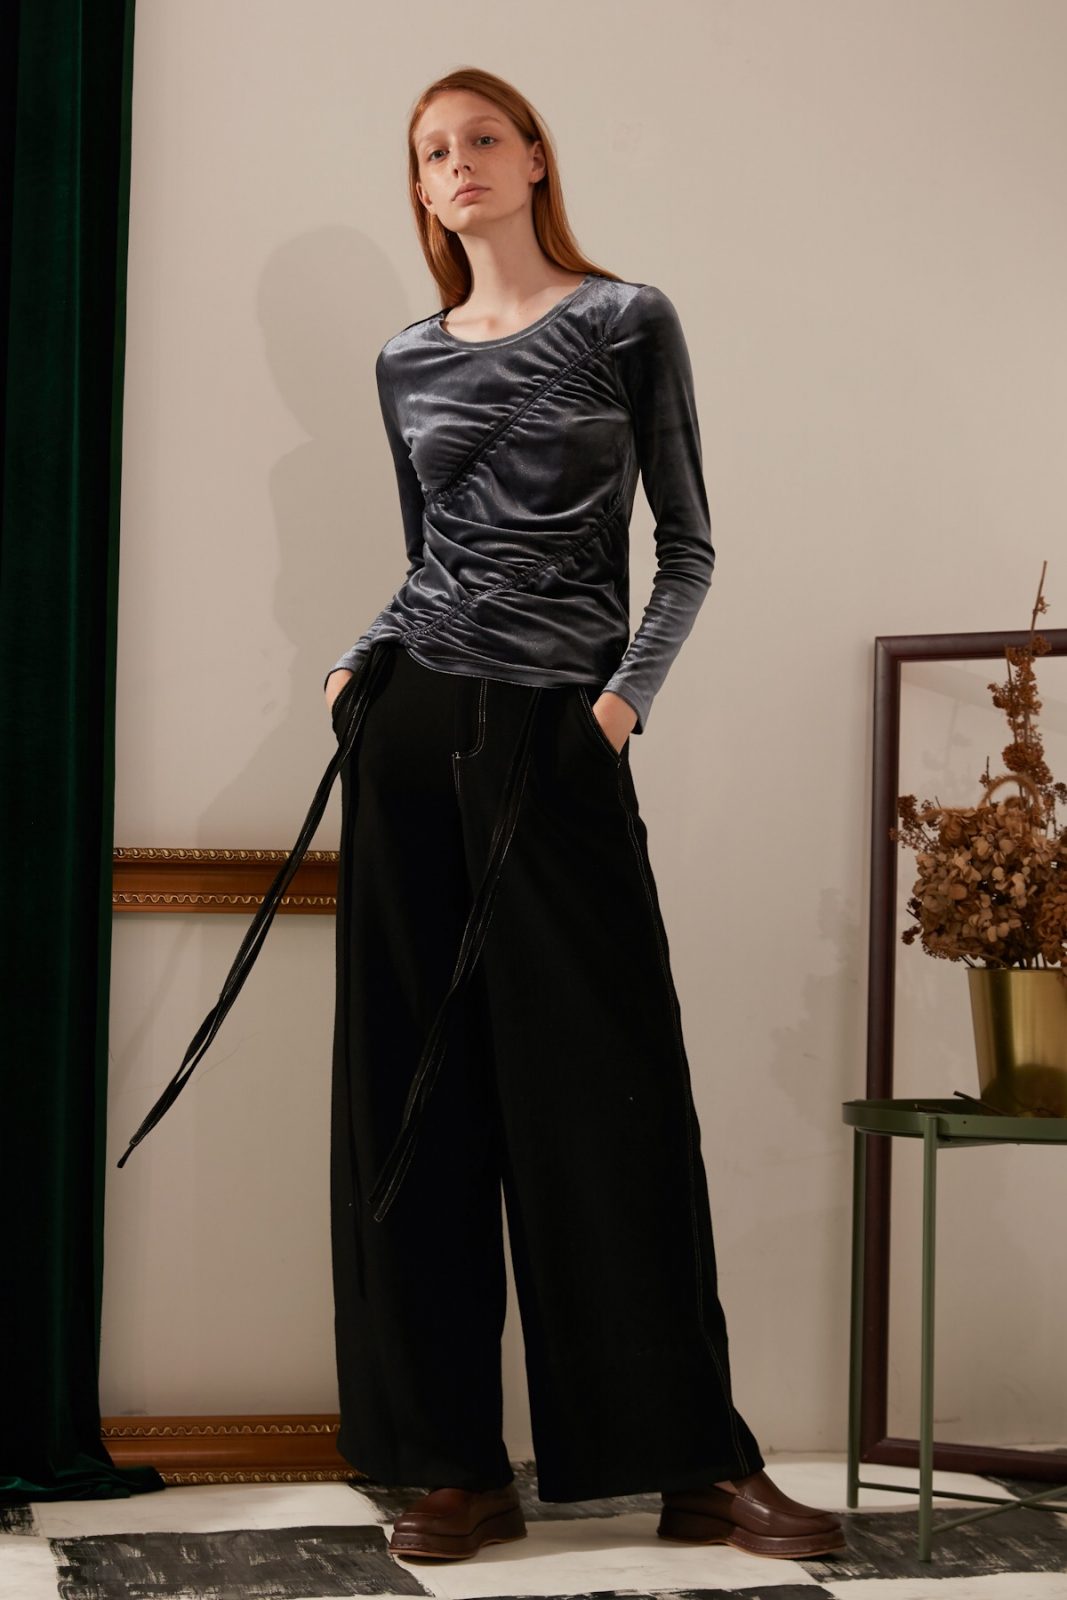 SKYE modern minimalist women fashion long wool wide legged pants with tie belt black